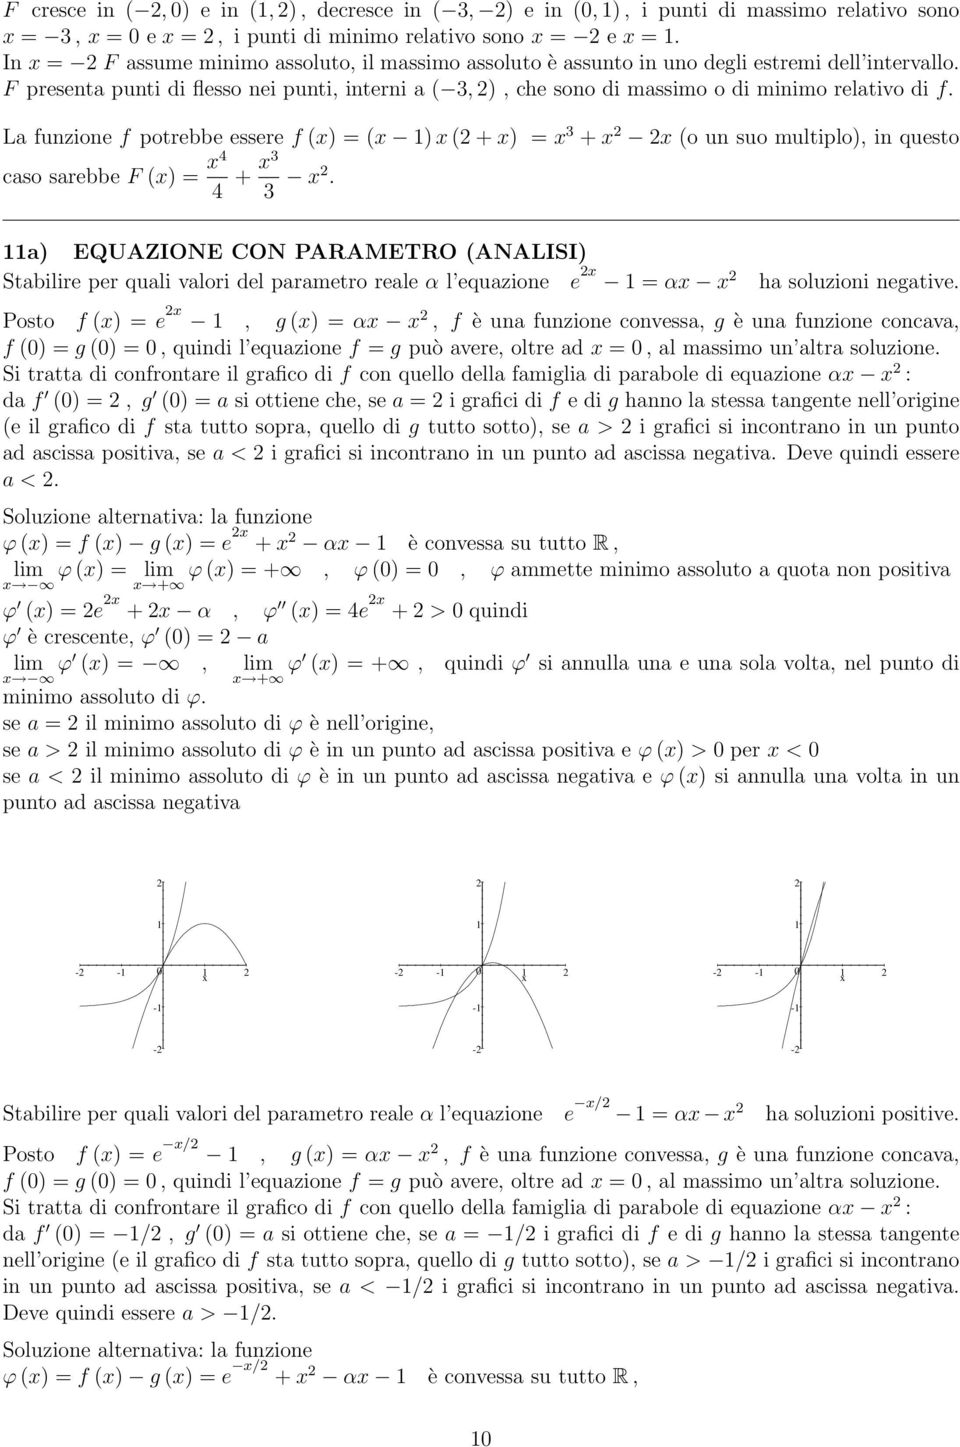 PARAMETRO ANALISI Stabilire per quali valori del parametro reale α l equazioe e = α ha soluzioi egative Posto f = e, g = α, f è ua fuzioe covessa, g è ua fuzioe cocava, f = g =, quidi l equazioe f =